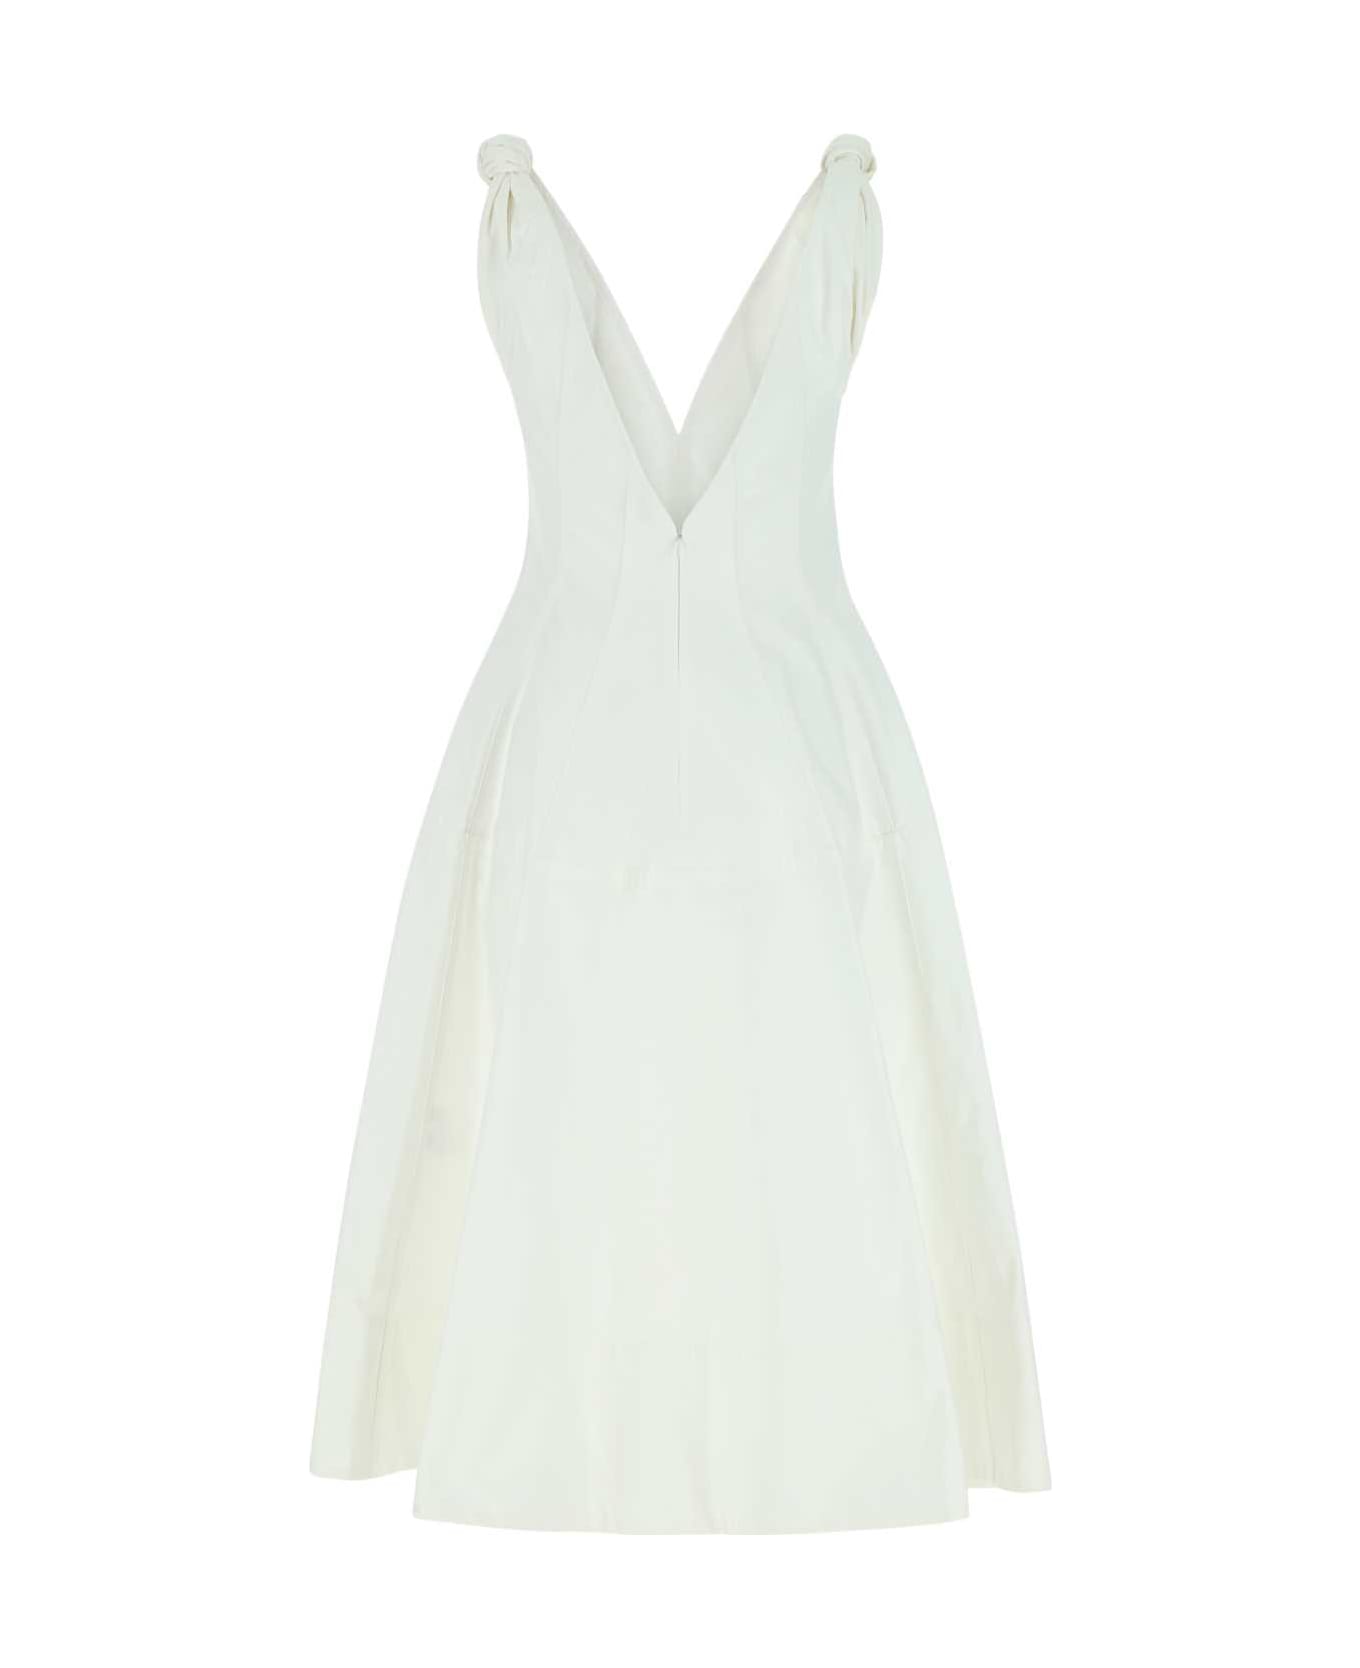 Bottega Veneta White Cotton Dress - 9000